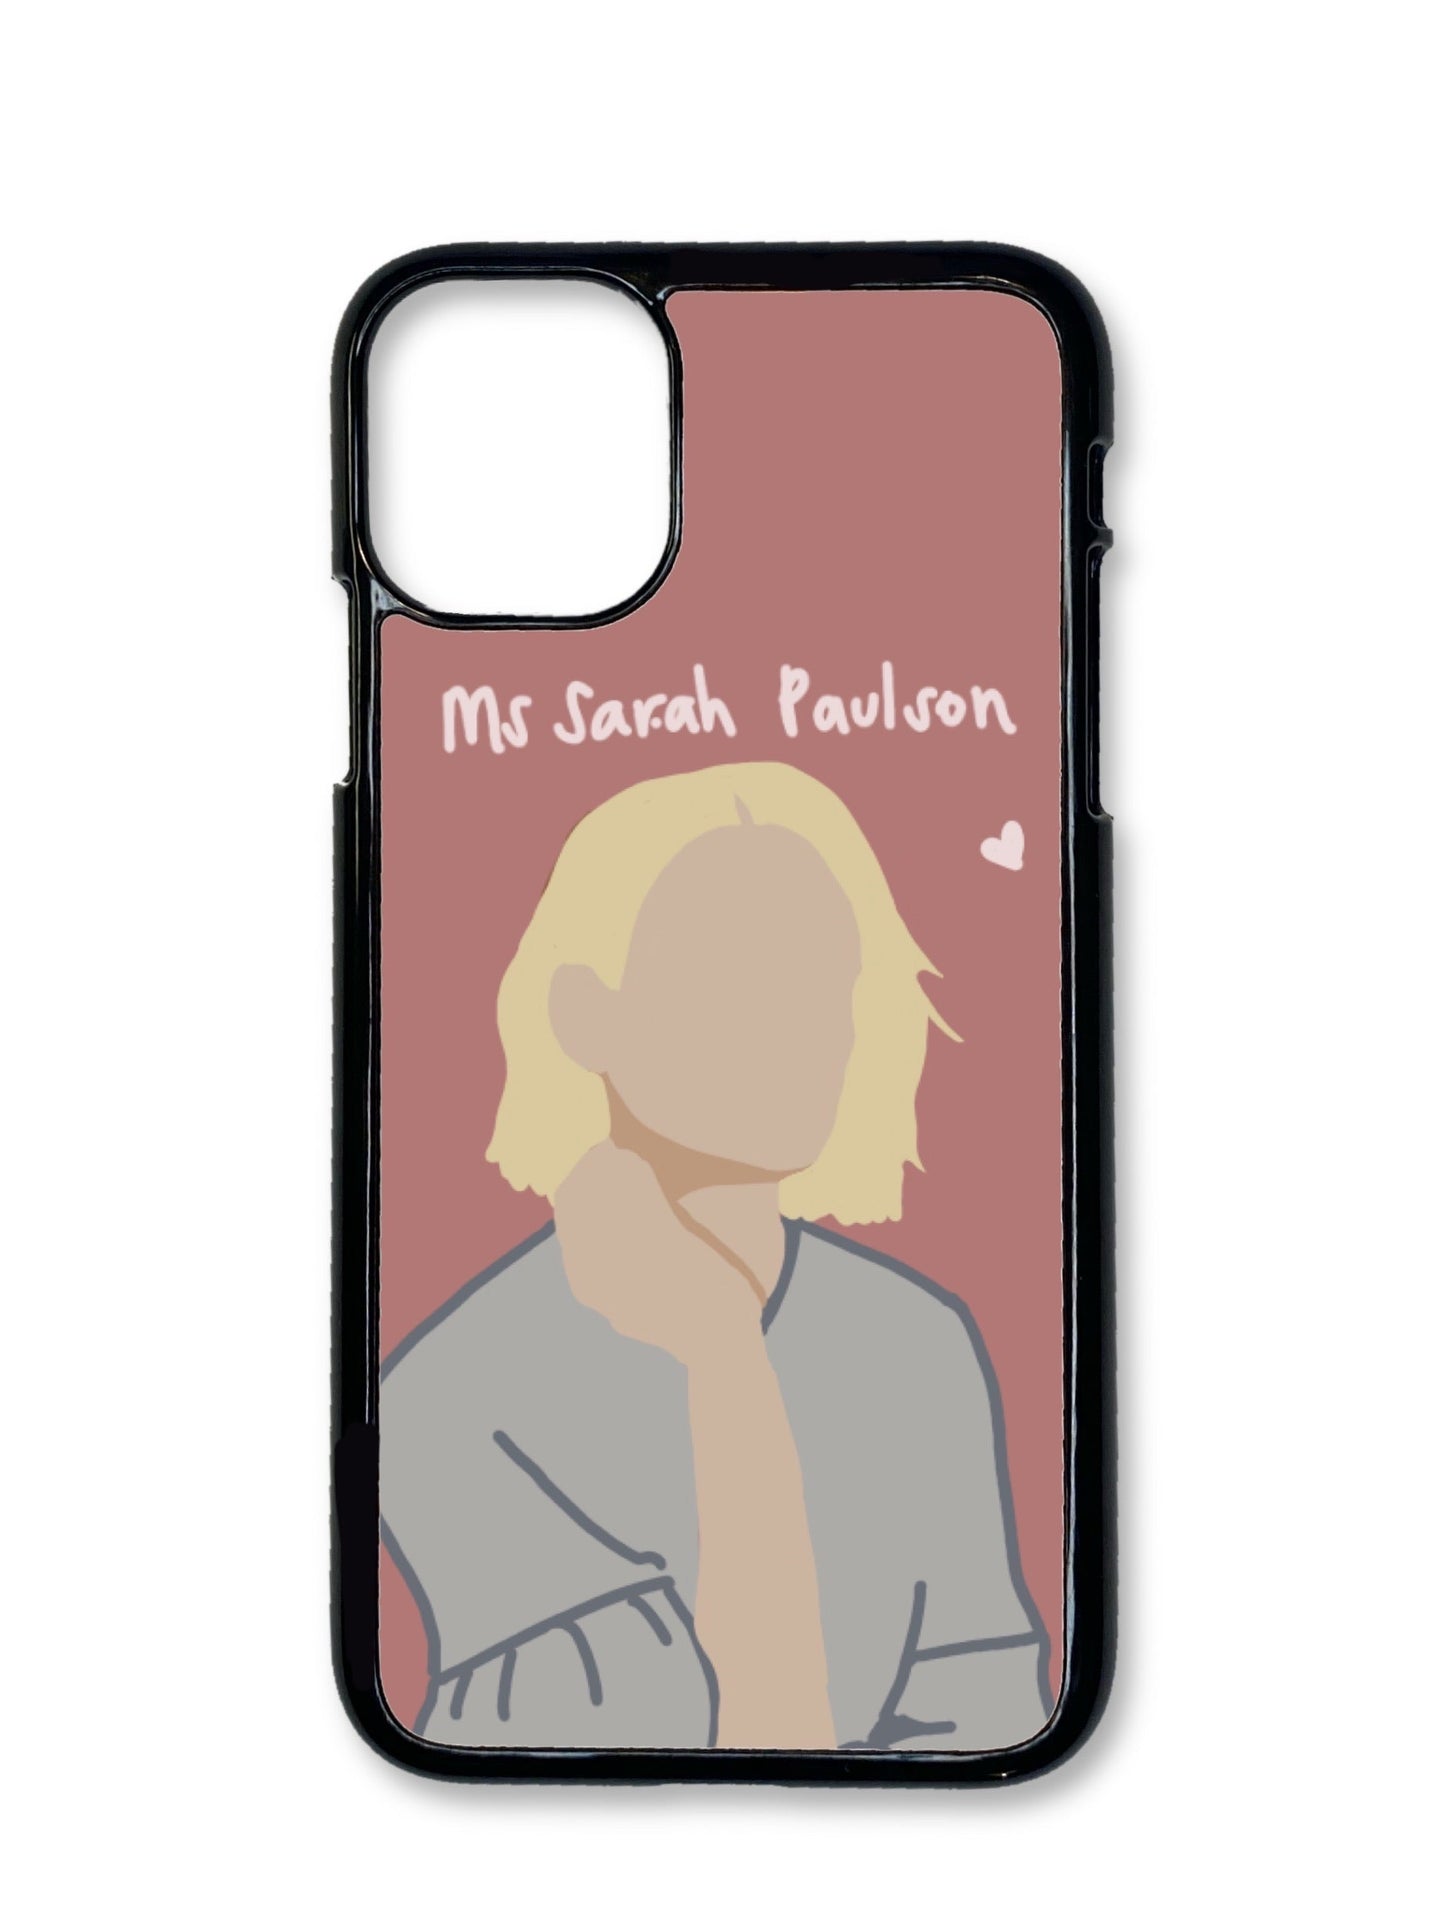 Sarah Paulson Phone Case